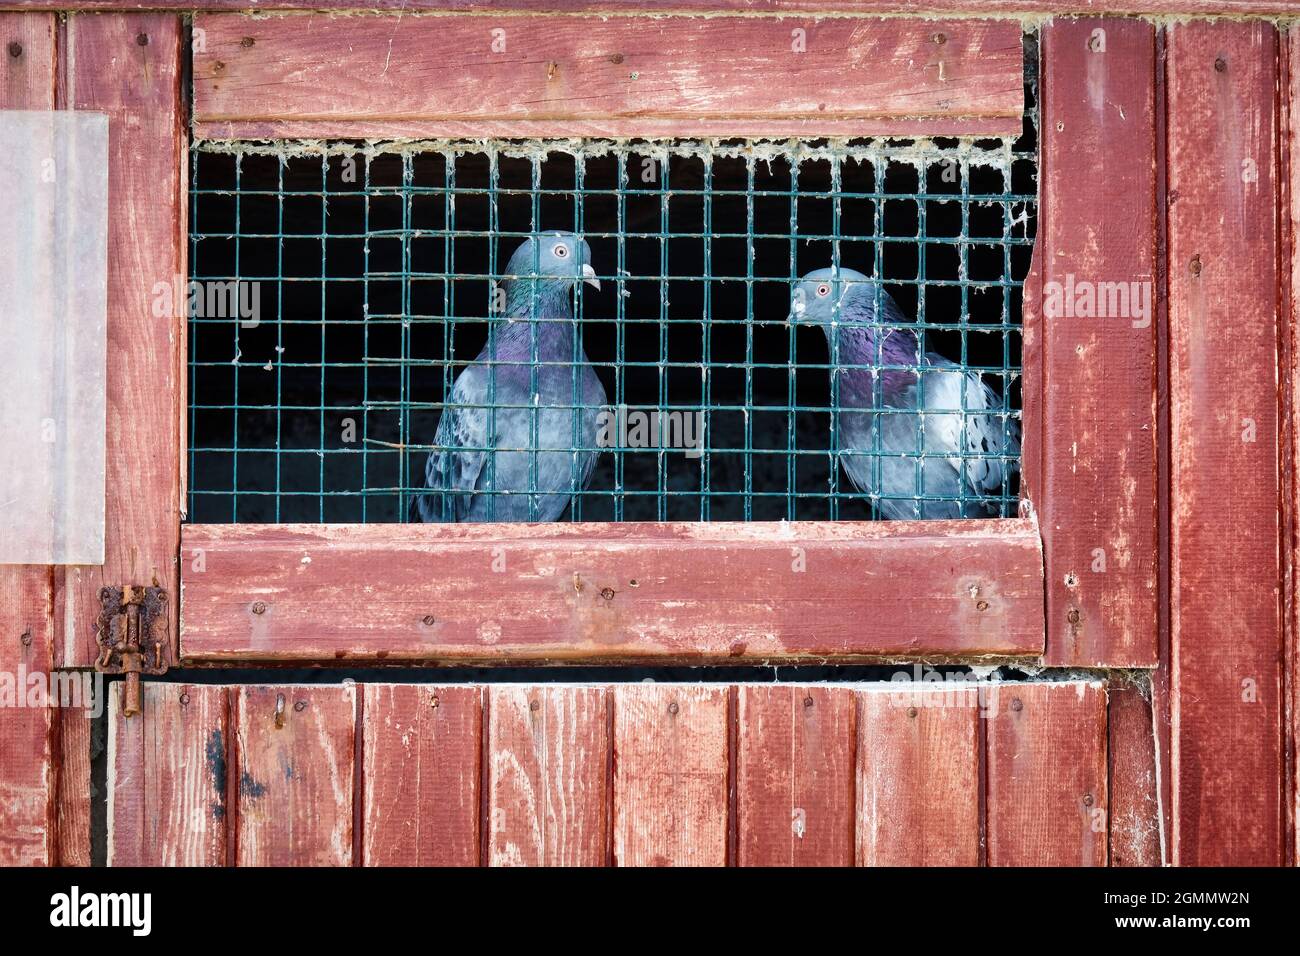 Zwei Tauben in einem Käfig mit einer Holztür. Konzept der Freiheit, Inhaftierung oder Gefangenschaft. Stockfoto